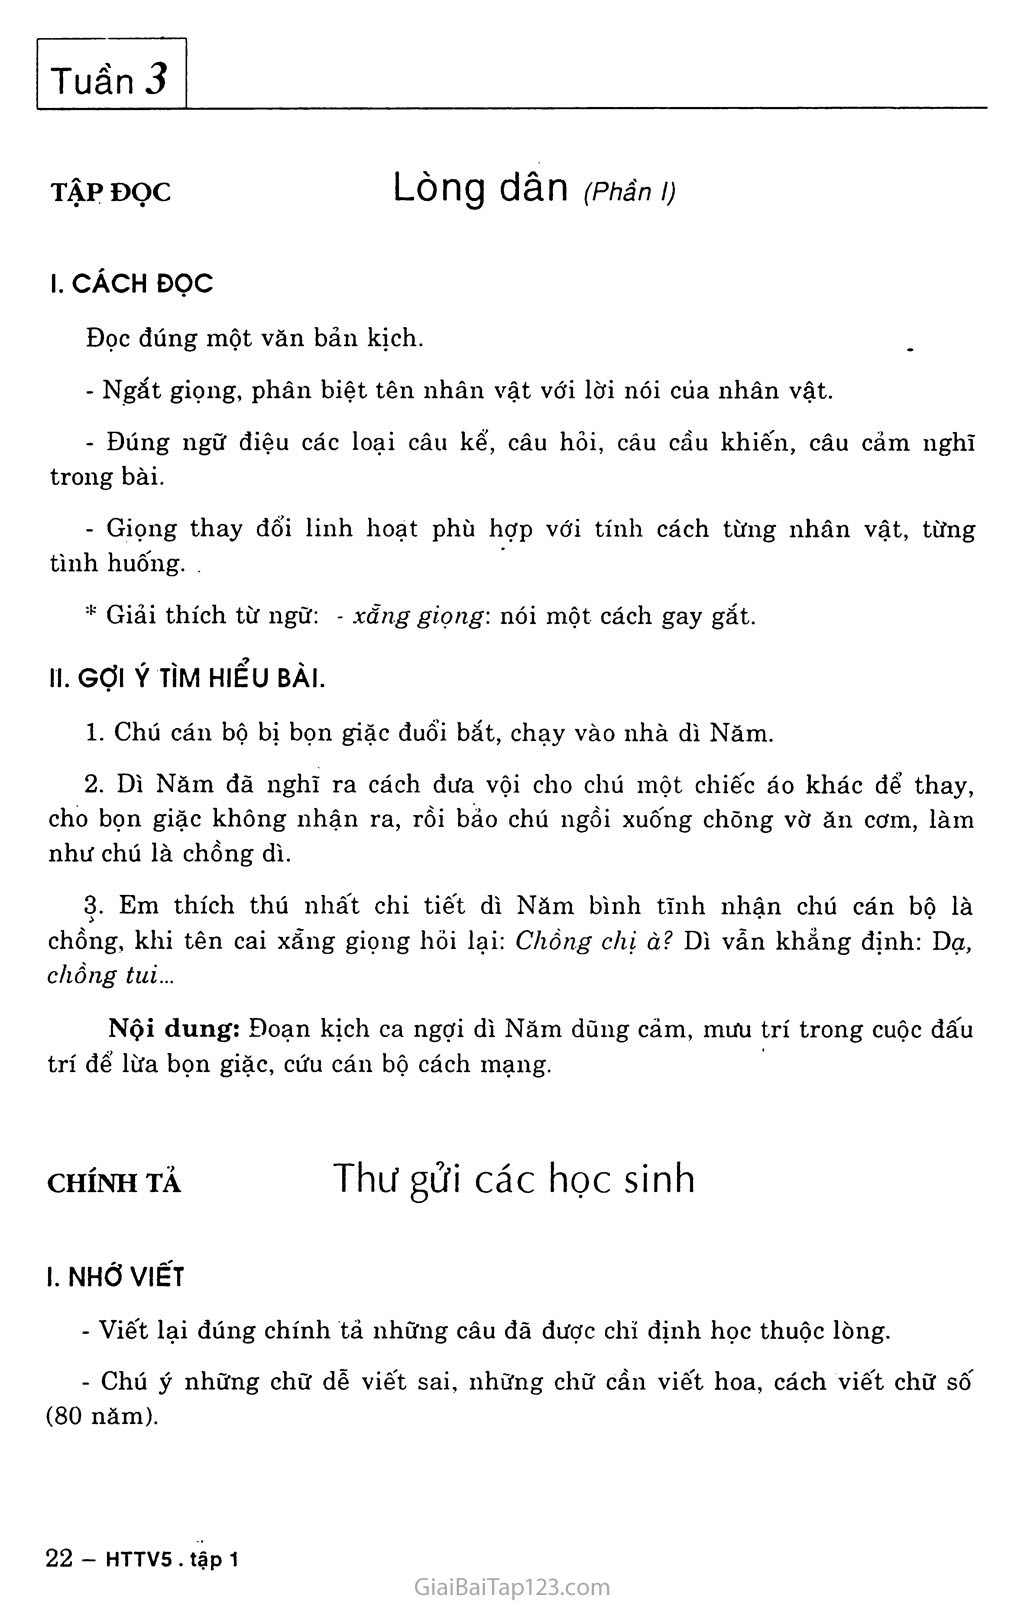 Tuần 3. Việt Nam - Tổ quốc em trang 1